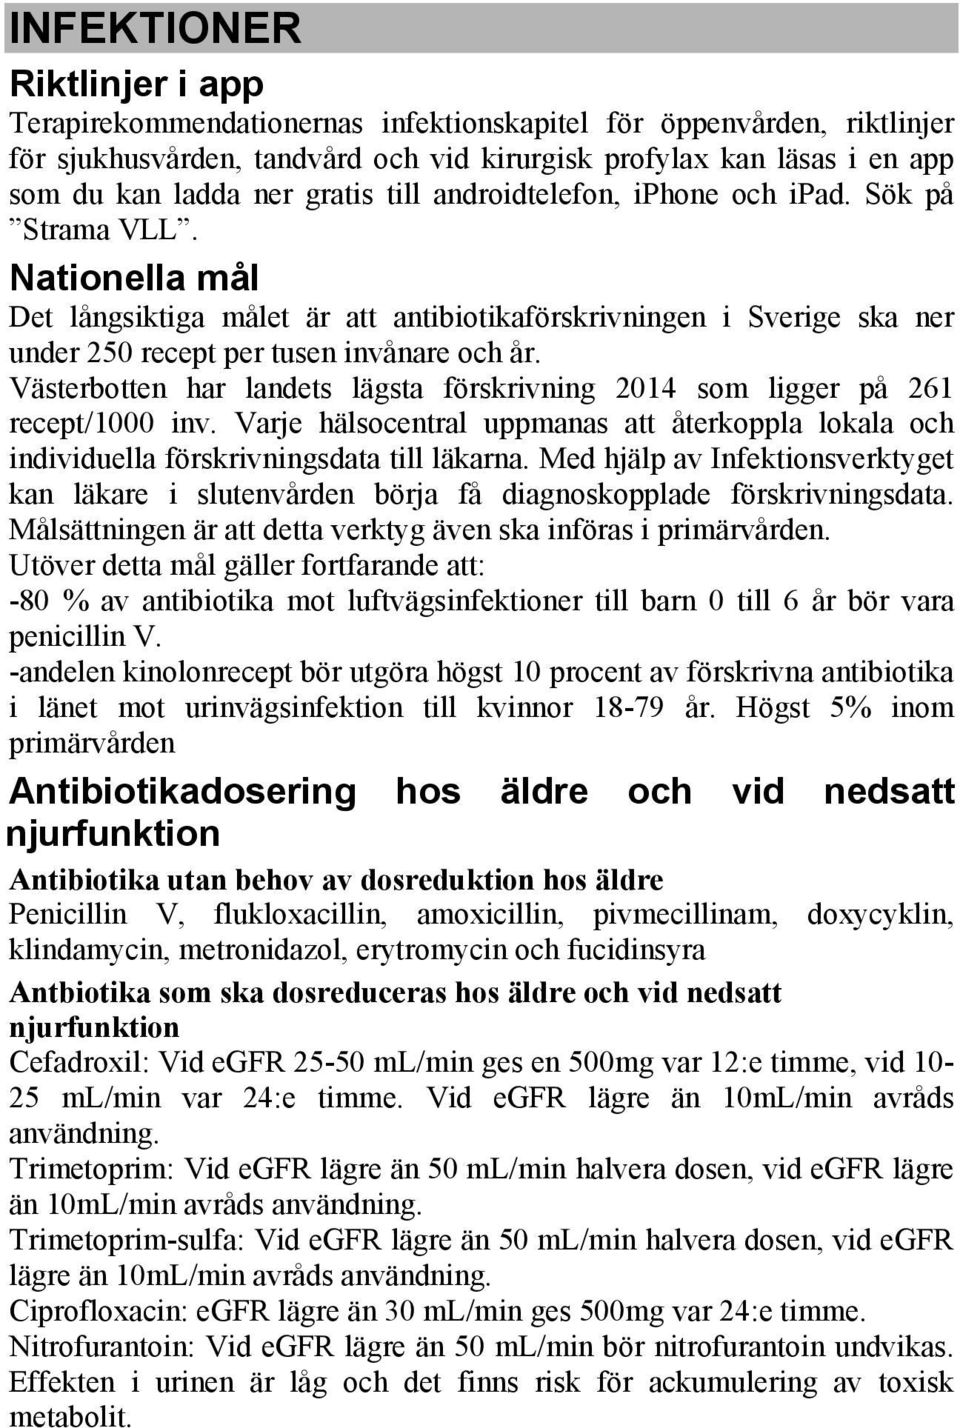 Västerbotten har landets lägsta förskrivning 2014 som ligger på 261 recept/1000 inv. Varje hälsocentral uppmanas att återkoppla lokala och individuella förskrivningsdata till läkarna.